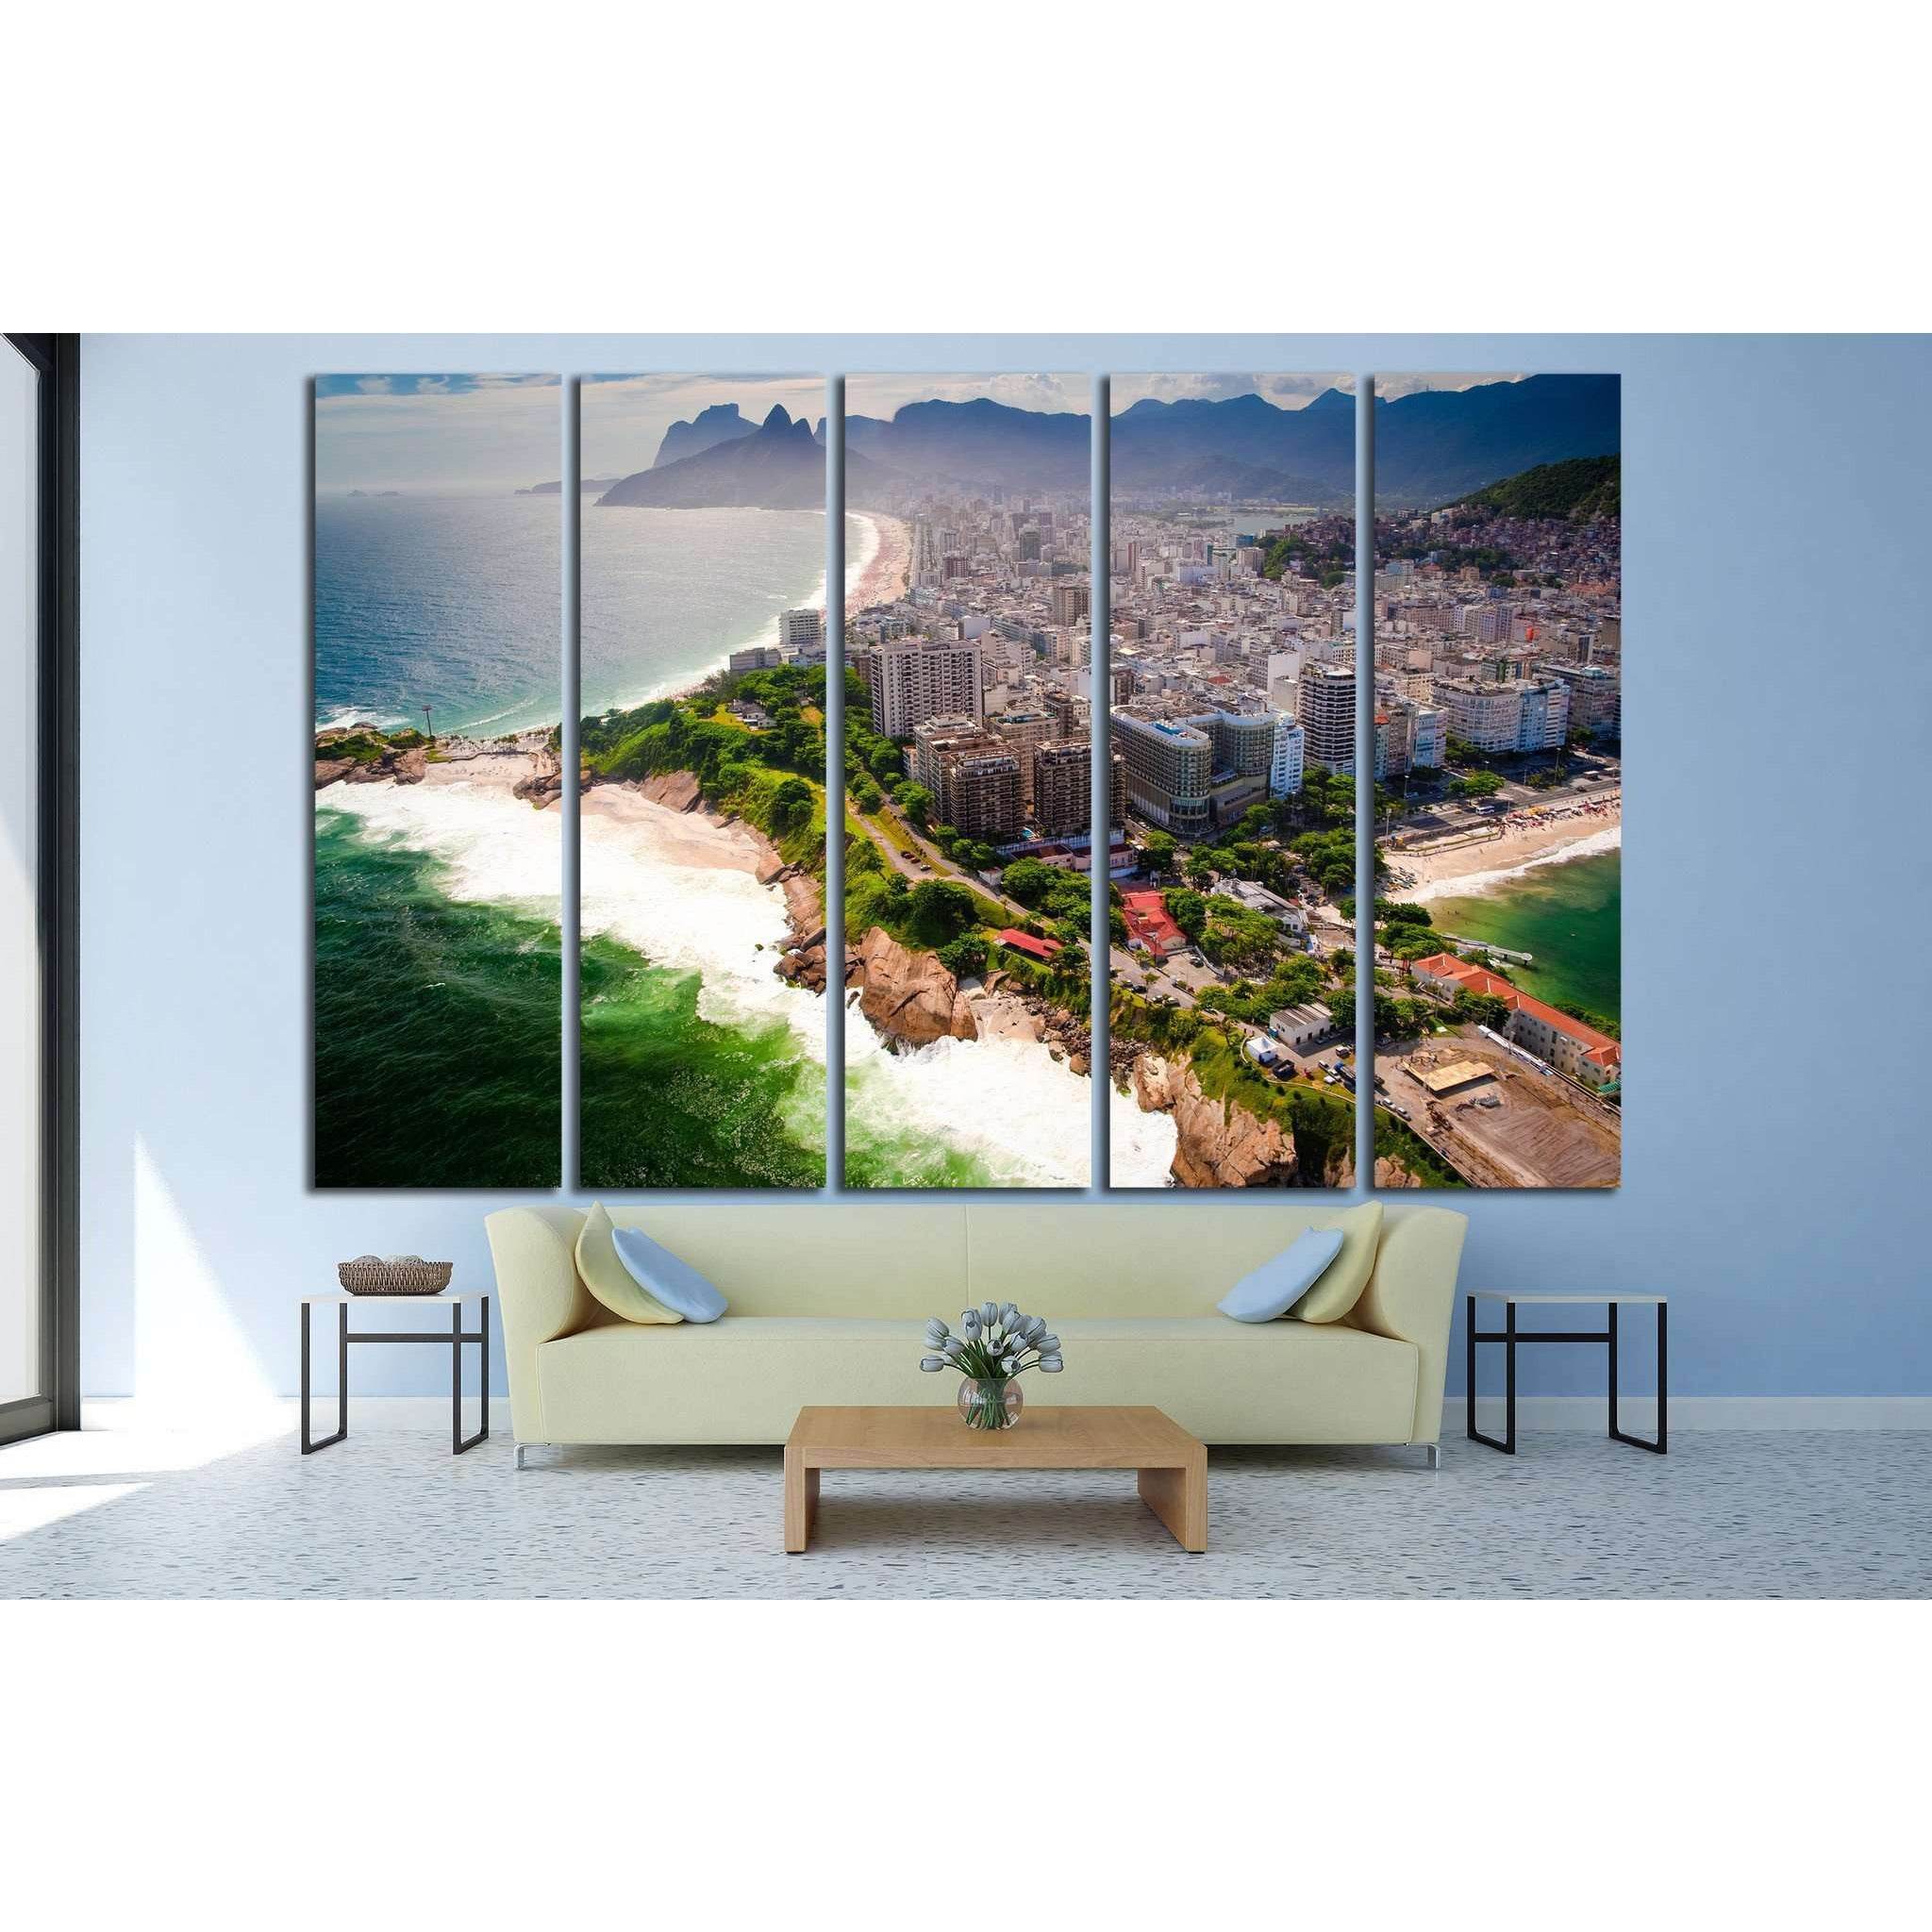 Ipanema Beach, Copacabana Beach, Rio de Janeiro, Brazil №1166 Ready to Hang Canvas Print